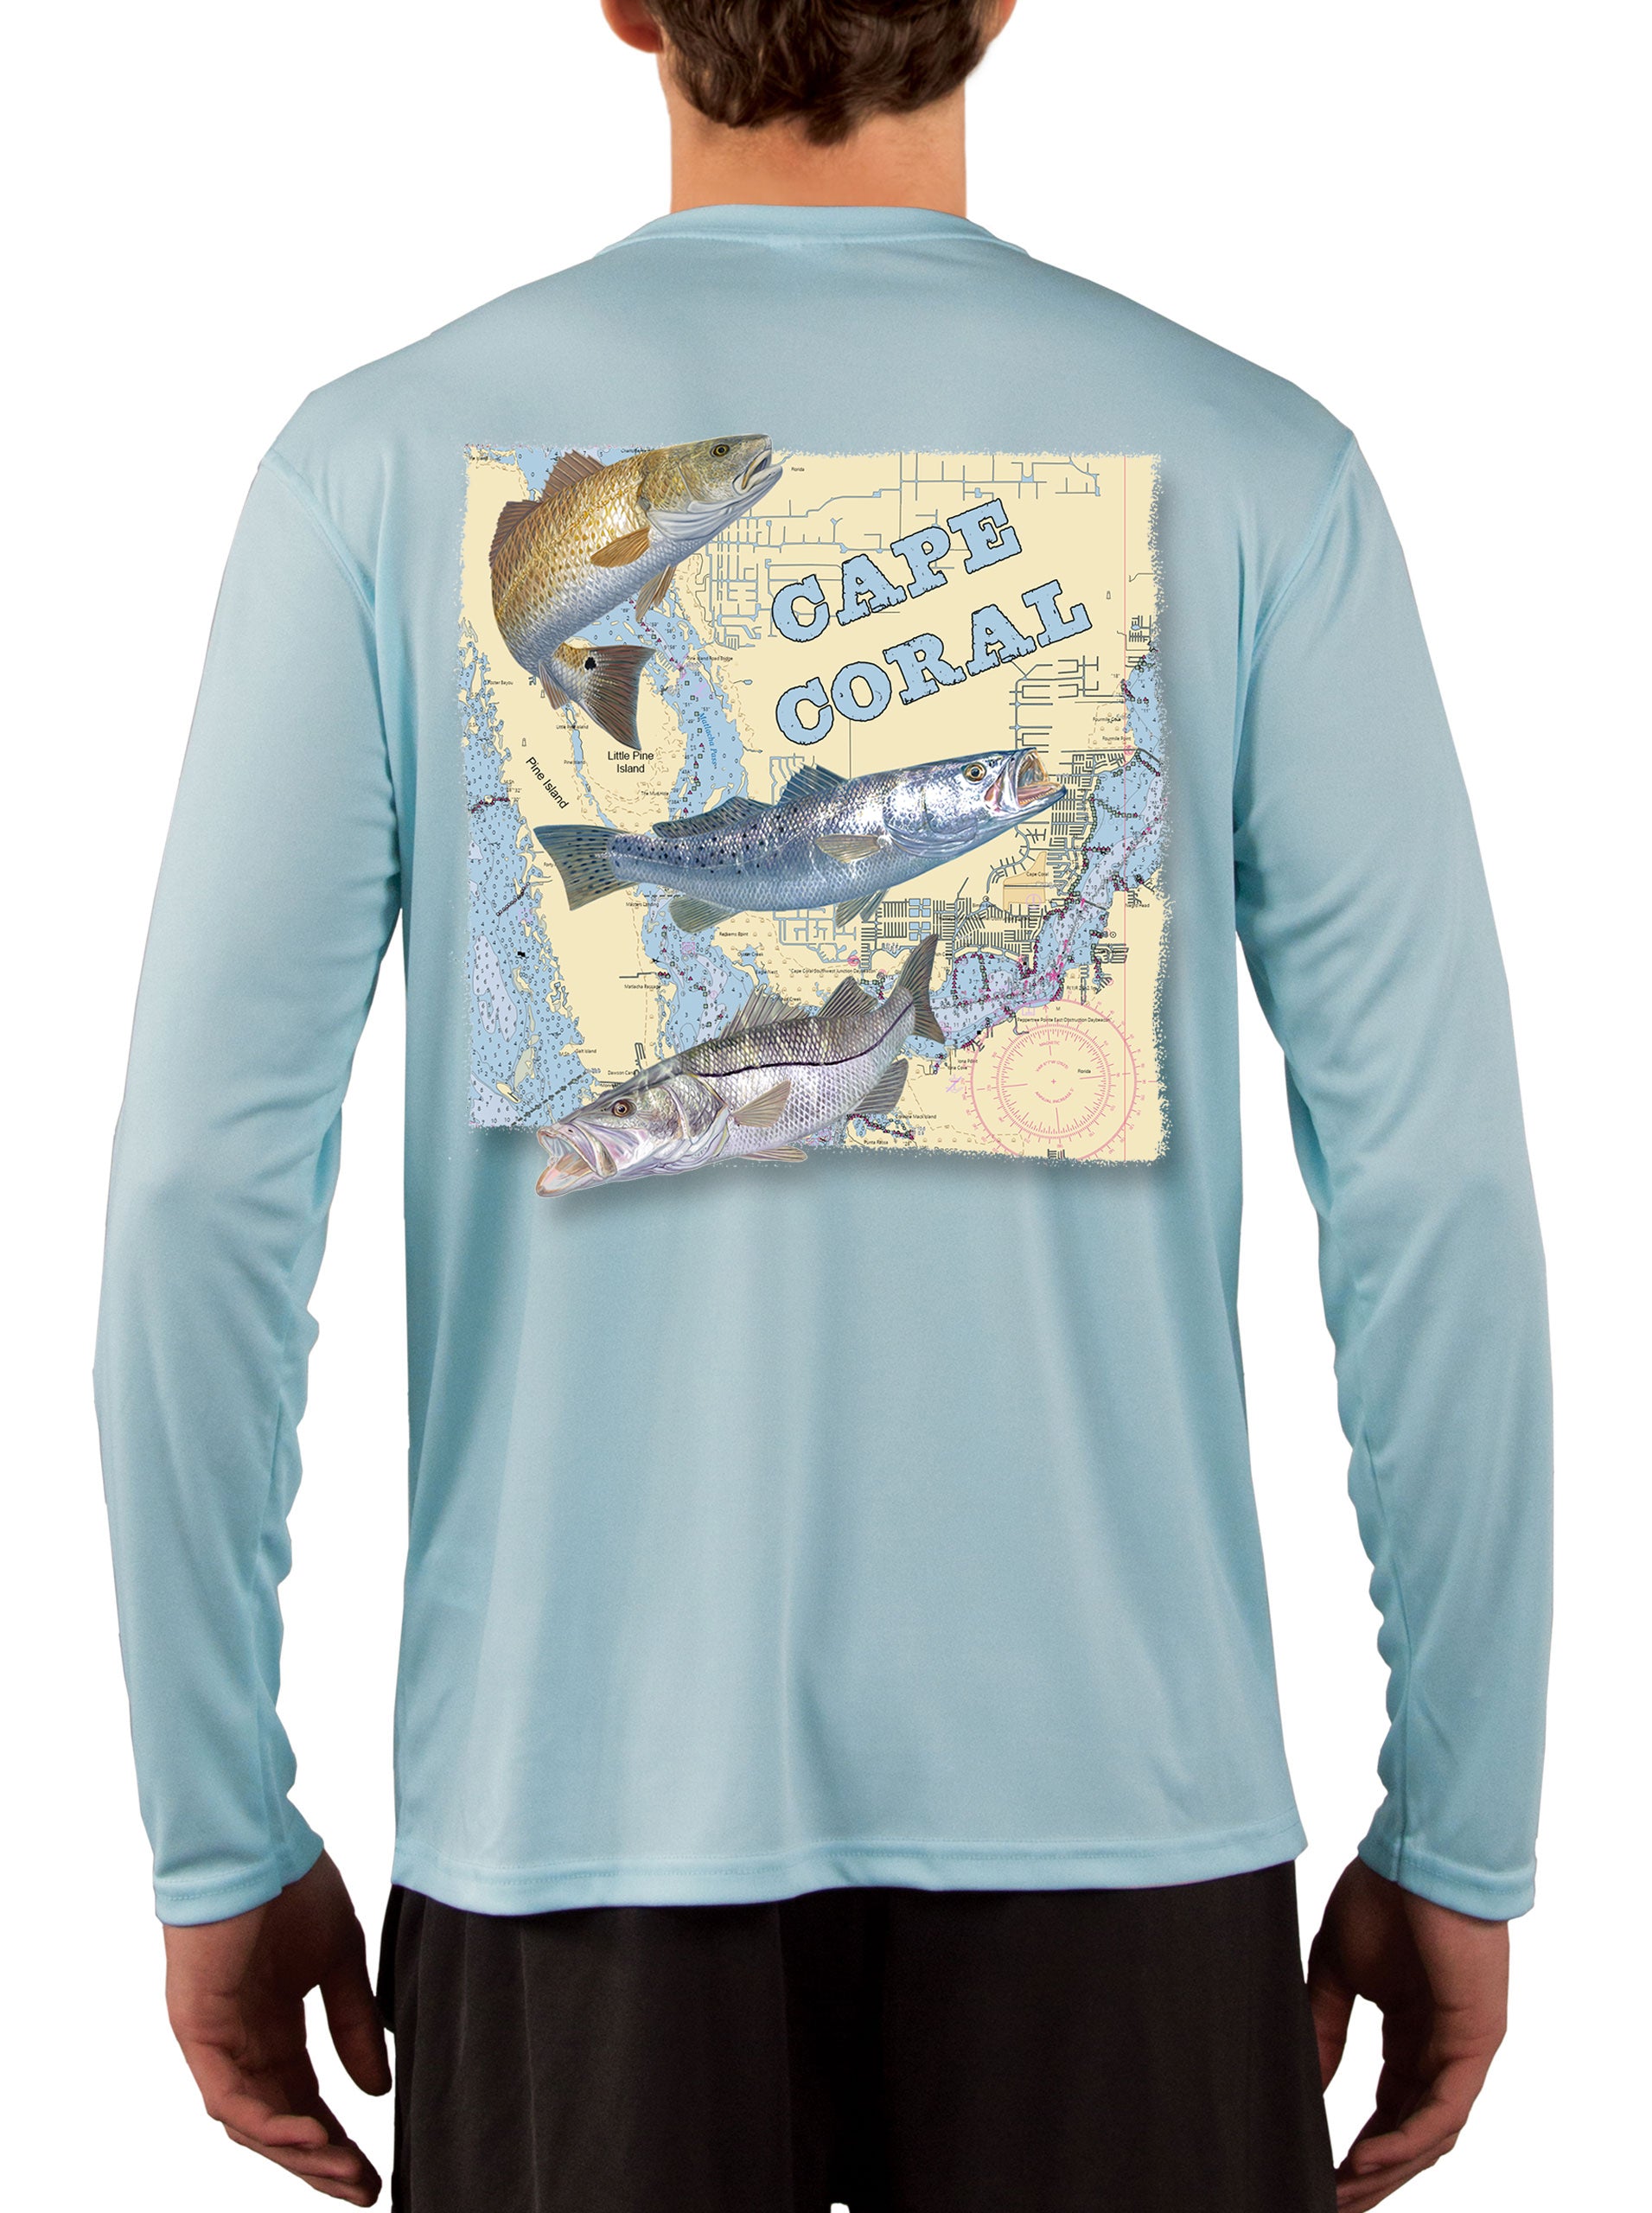 Fishing Shirts for Men